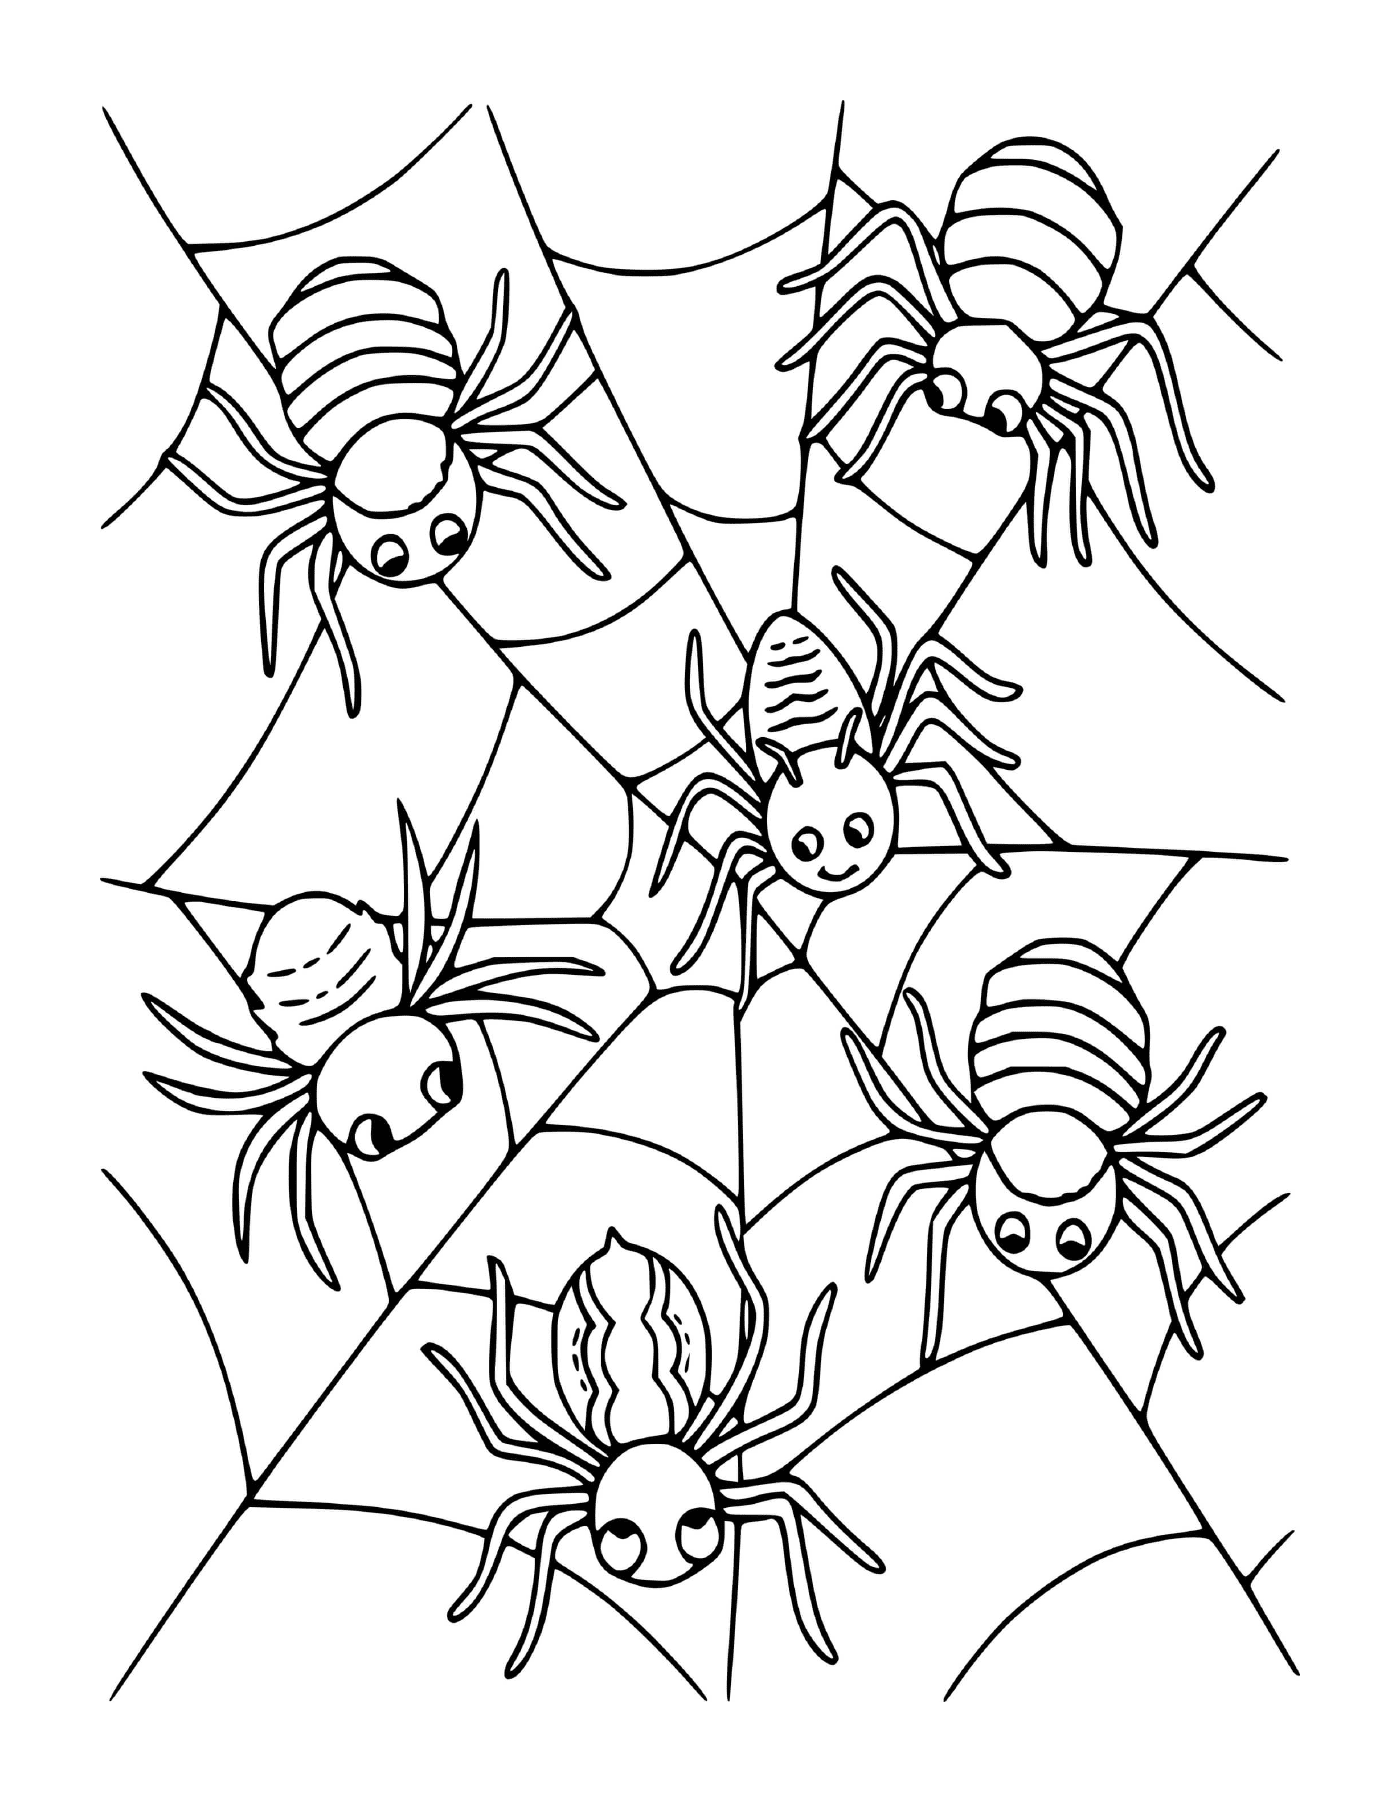  Un gruppo di quattro ragni seduti su una ragnatela 